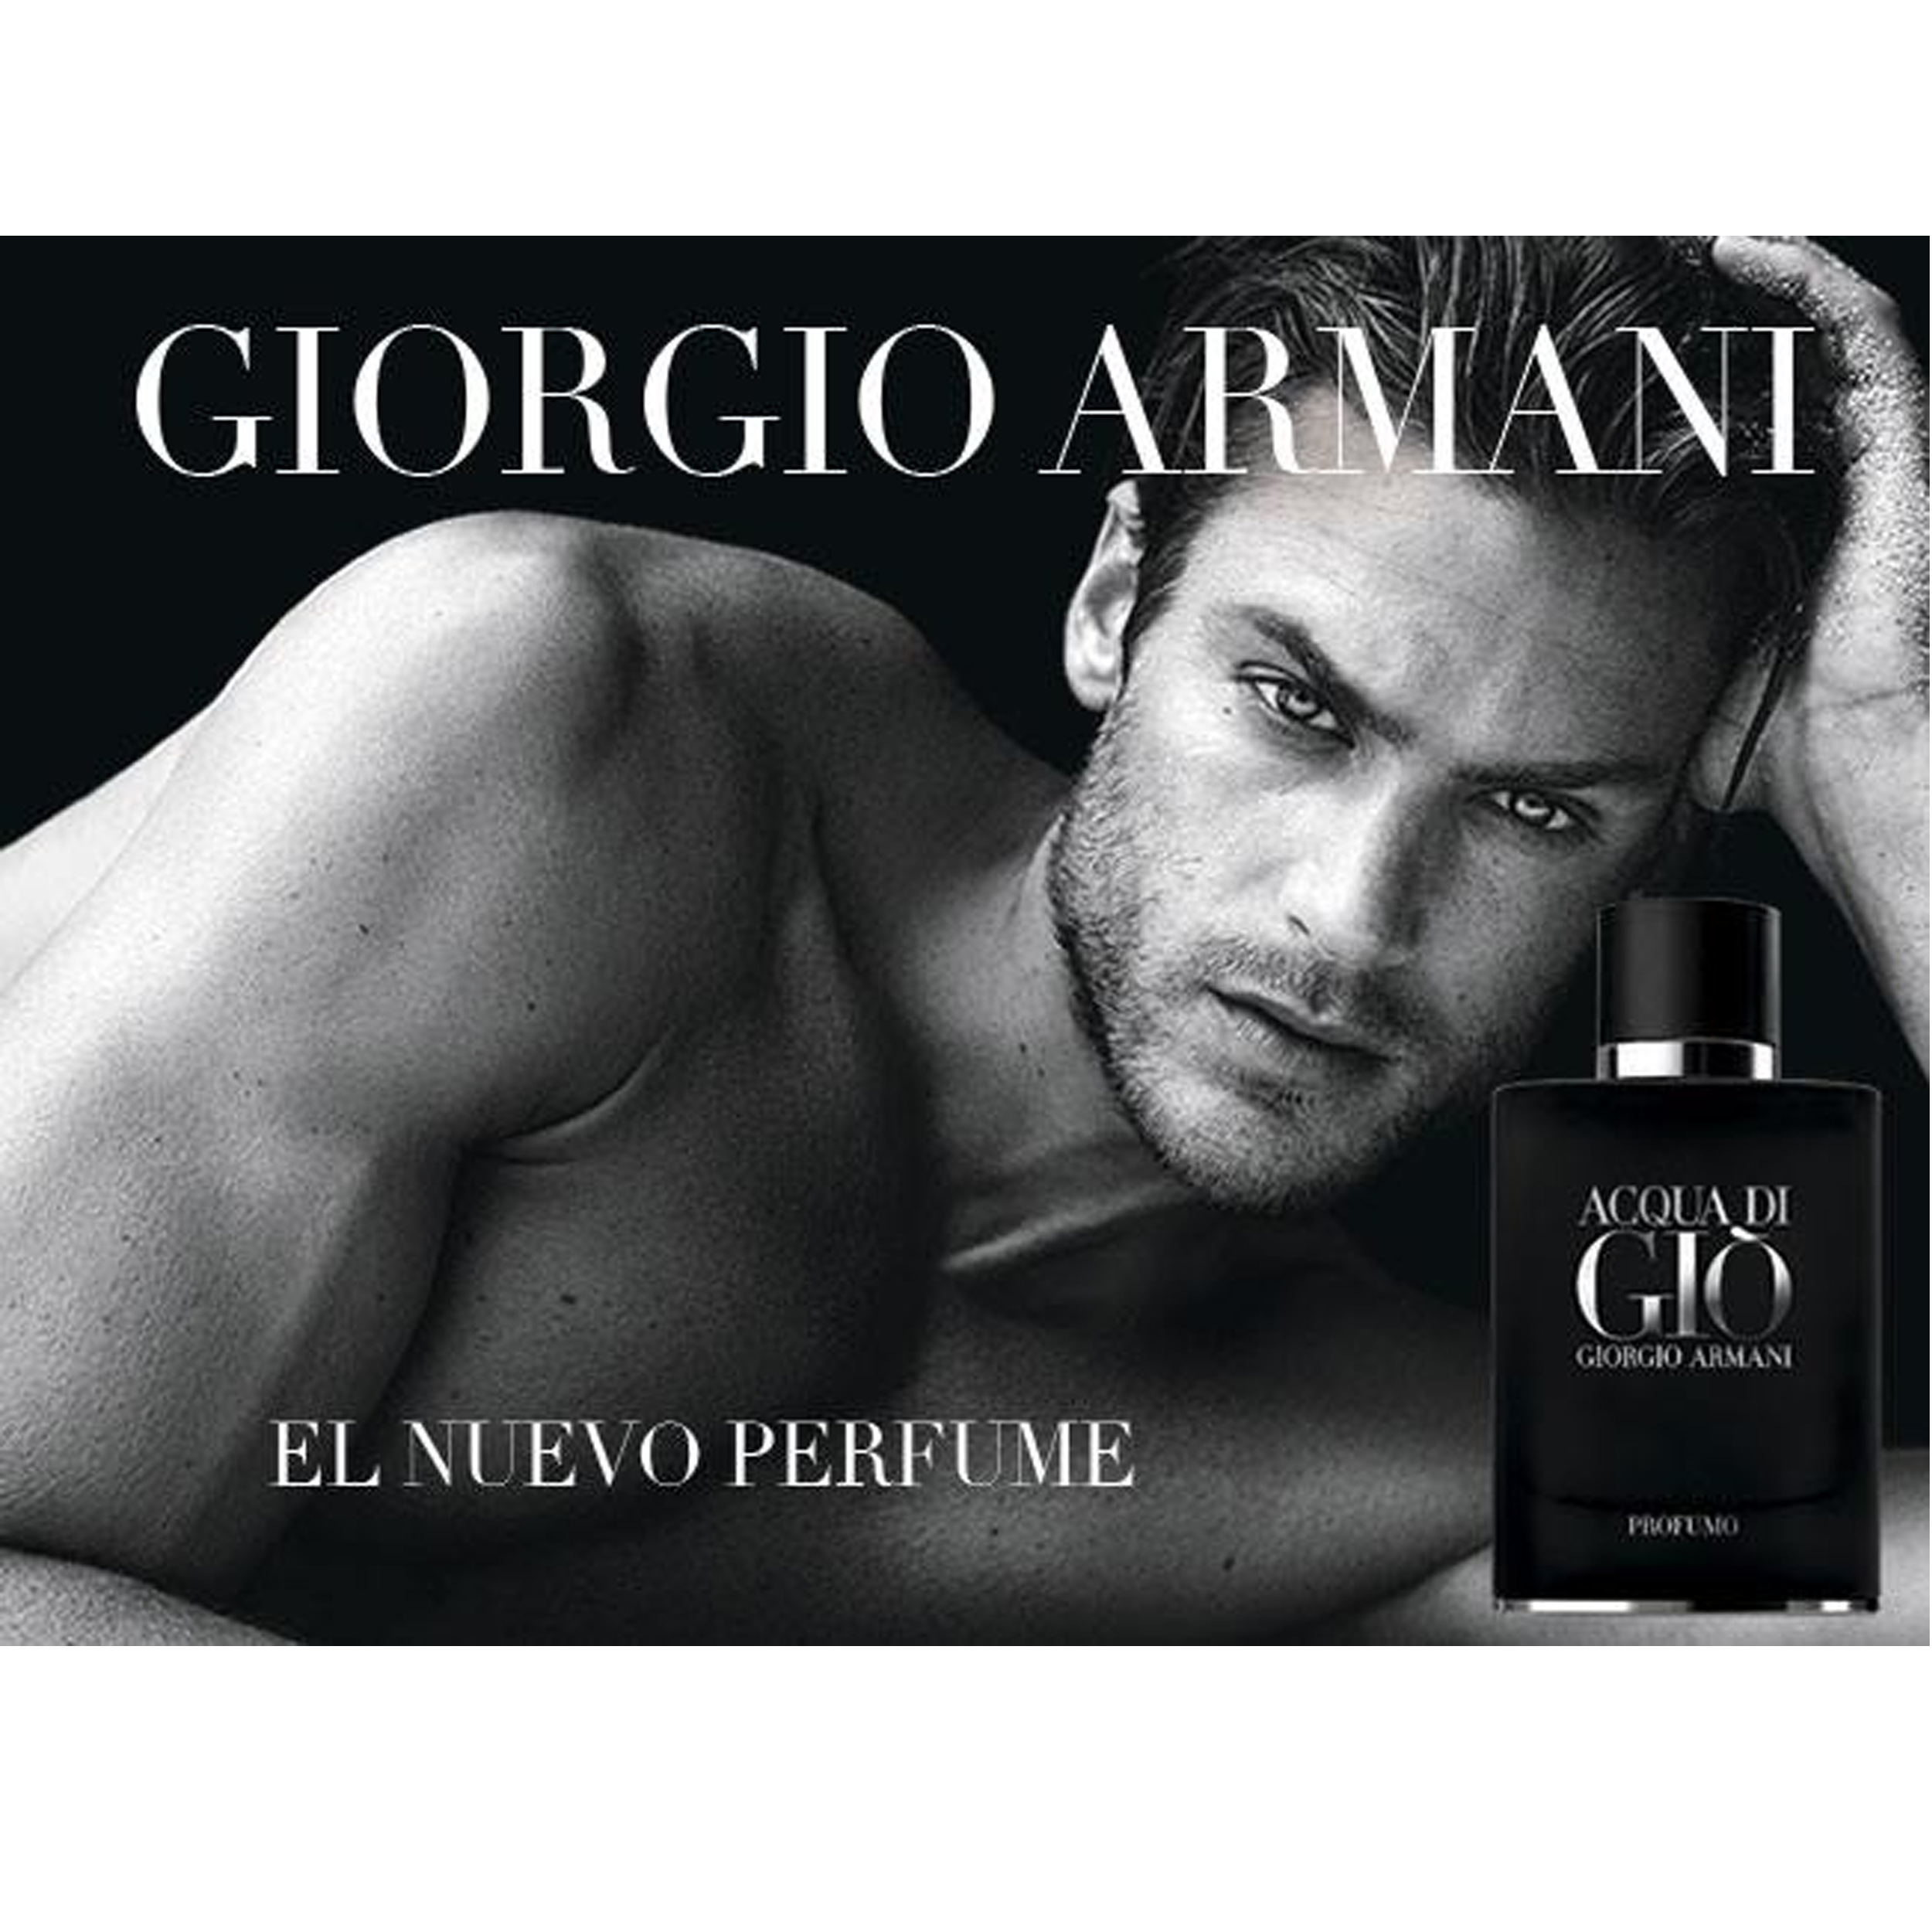 Perfume Acqua Di Giò Profumo Giorgio Armani     (Replica Con Fragancia Importada)- Hombre